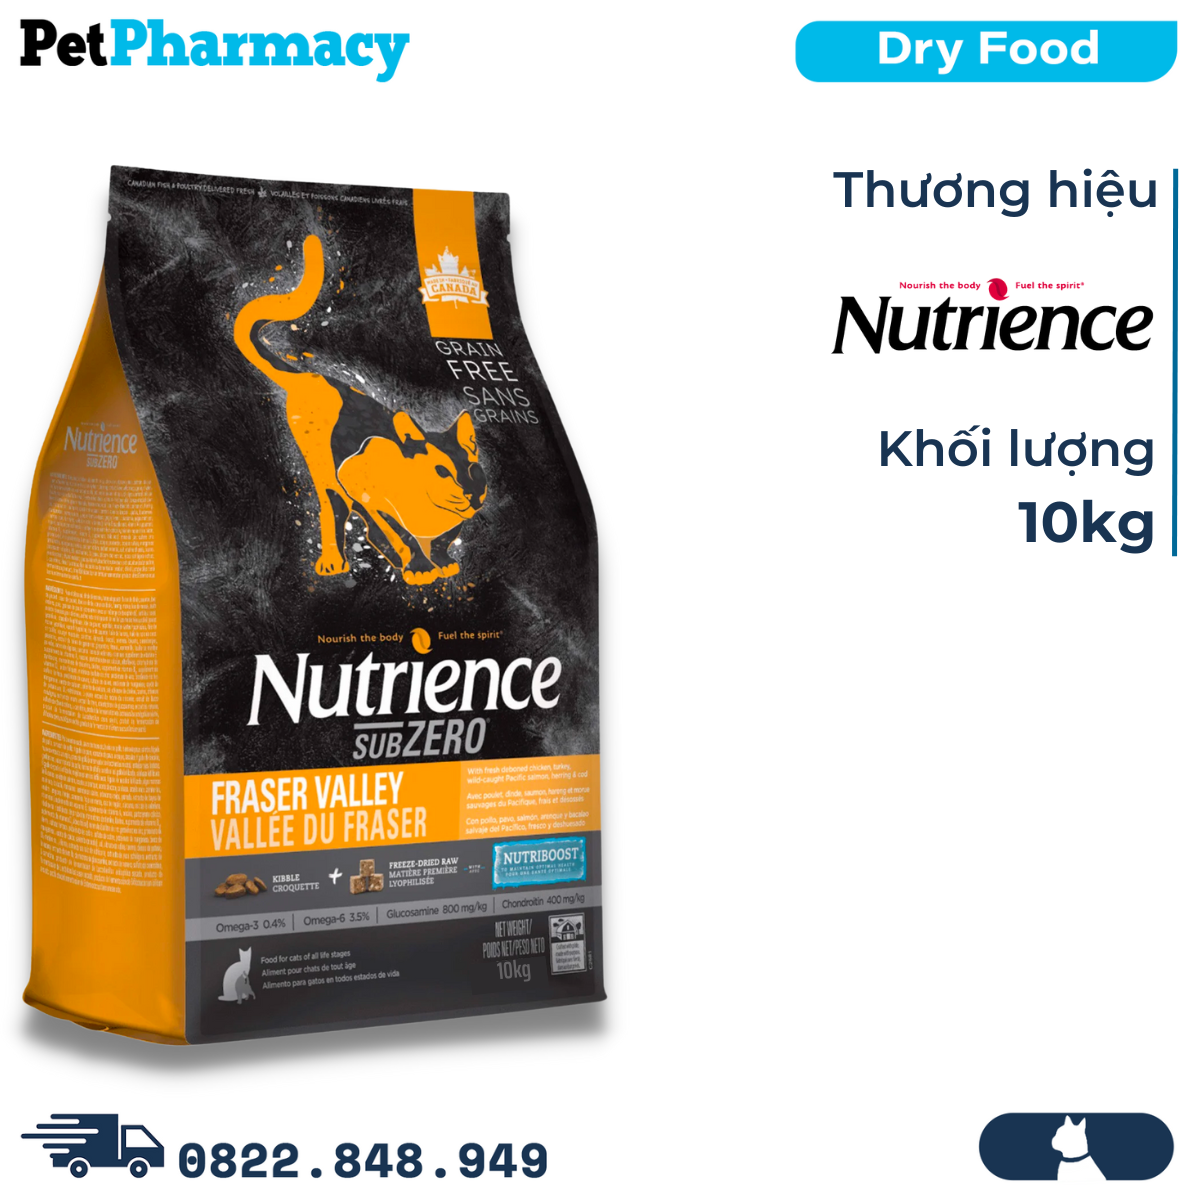  Thức ăn mèo Nutrience SubZero 10kg - Gà tây, cá hồi, cá trích, cá tuyết và rau củ quả tự nhiên, cho mèo mọi lứa tuổi PetPharmacy 